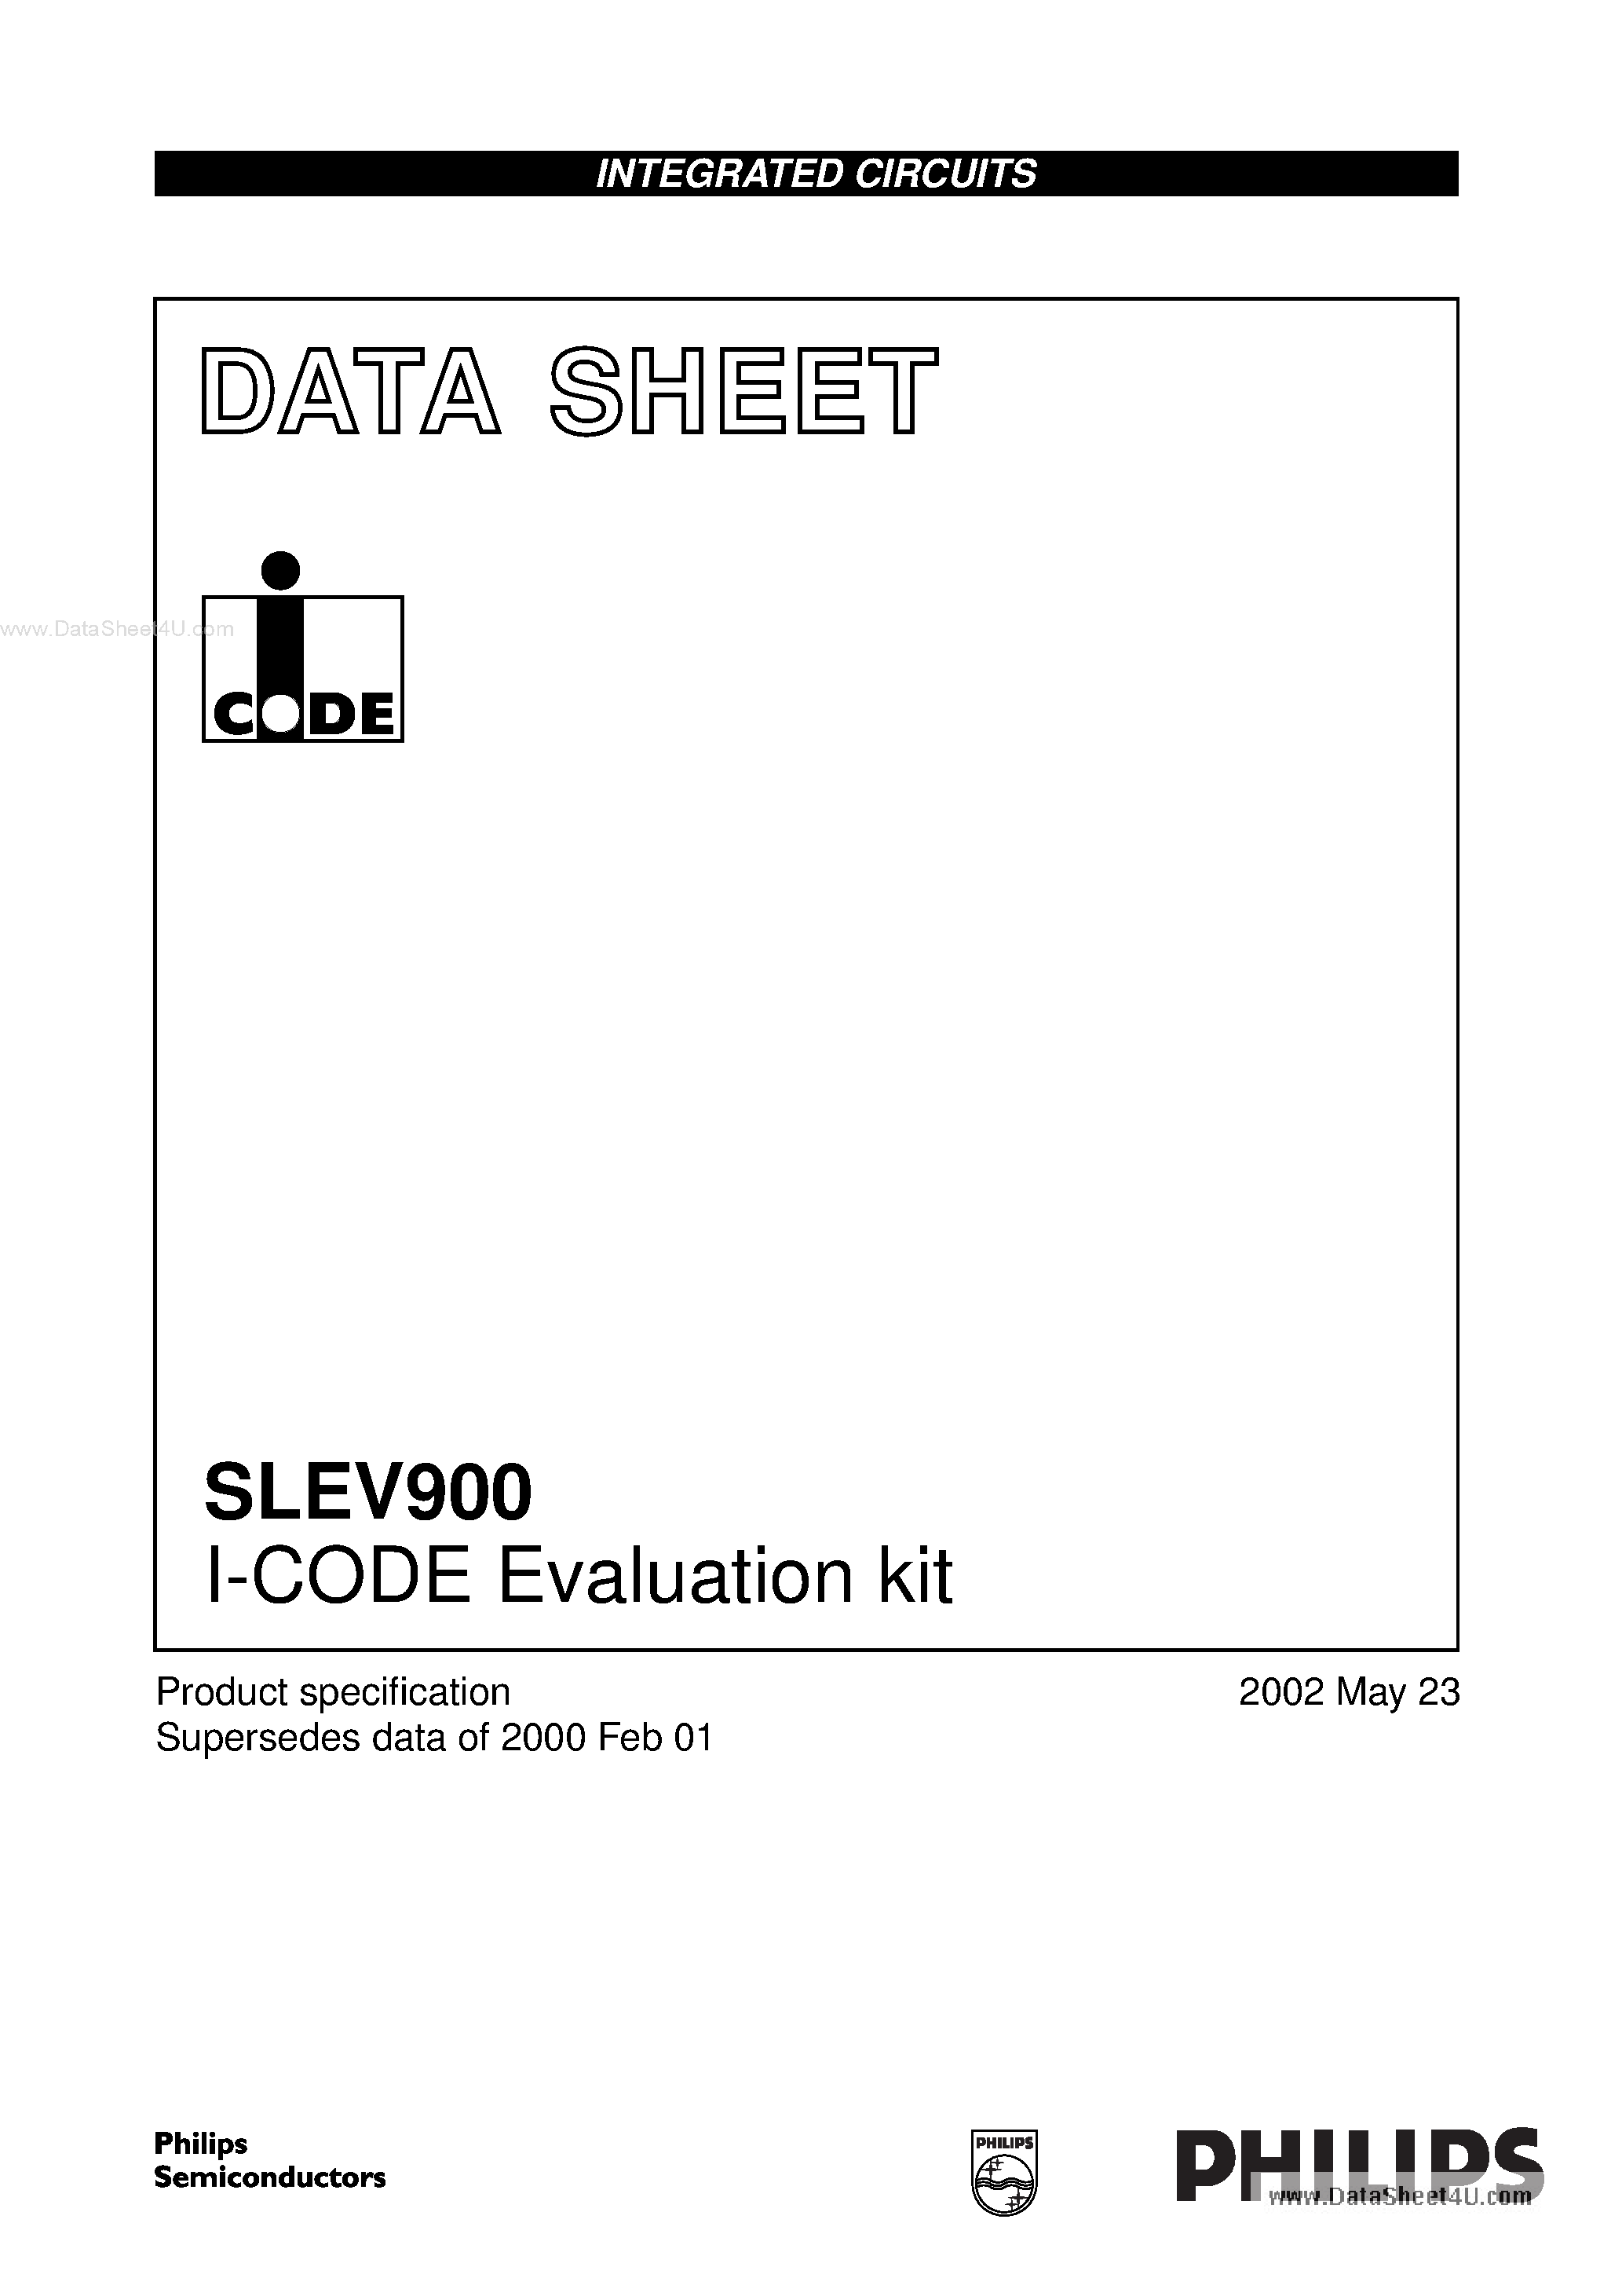 Даташит SLEV900 - I-CODE Evaluation kit страница 1